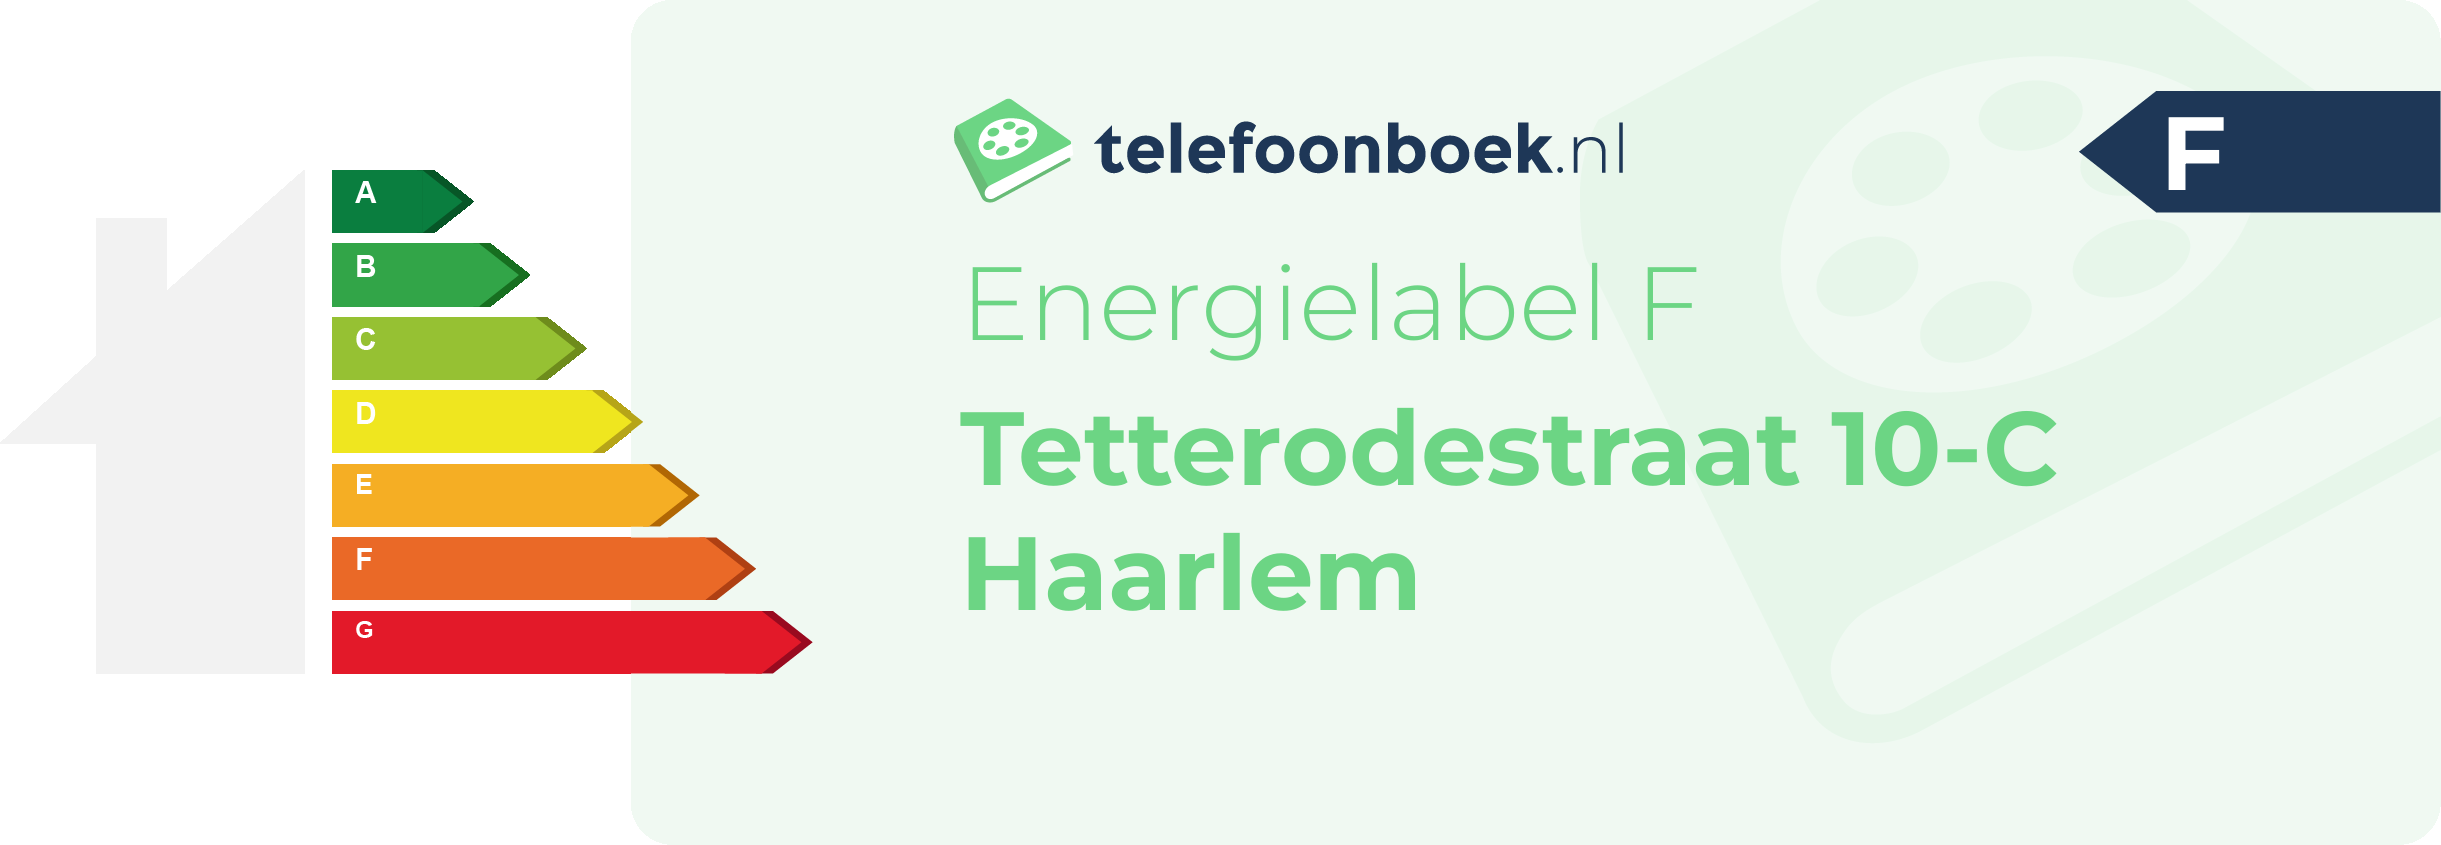 Energielabel Tetterodestraat 10-C Haarlem